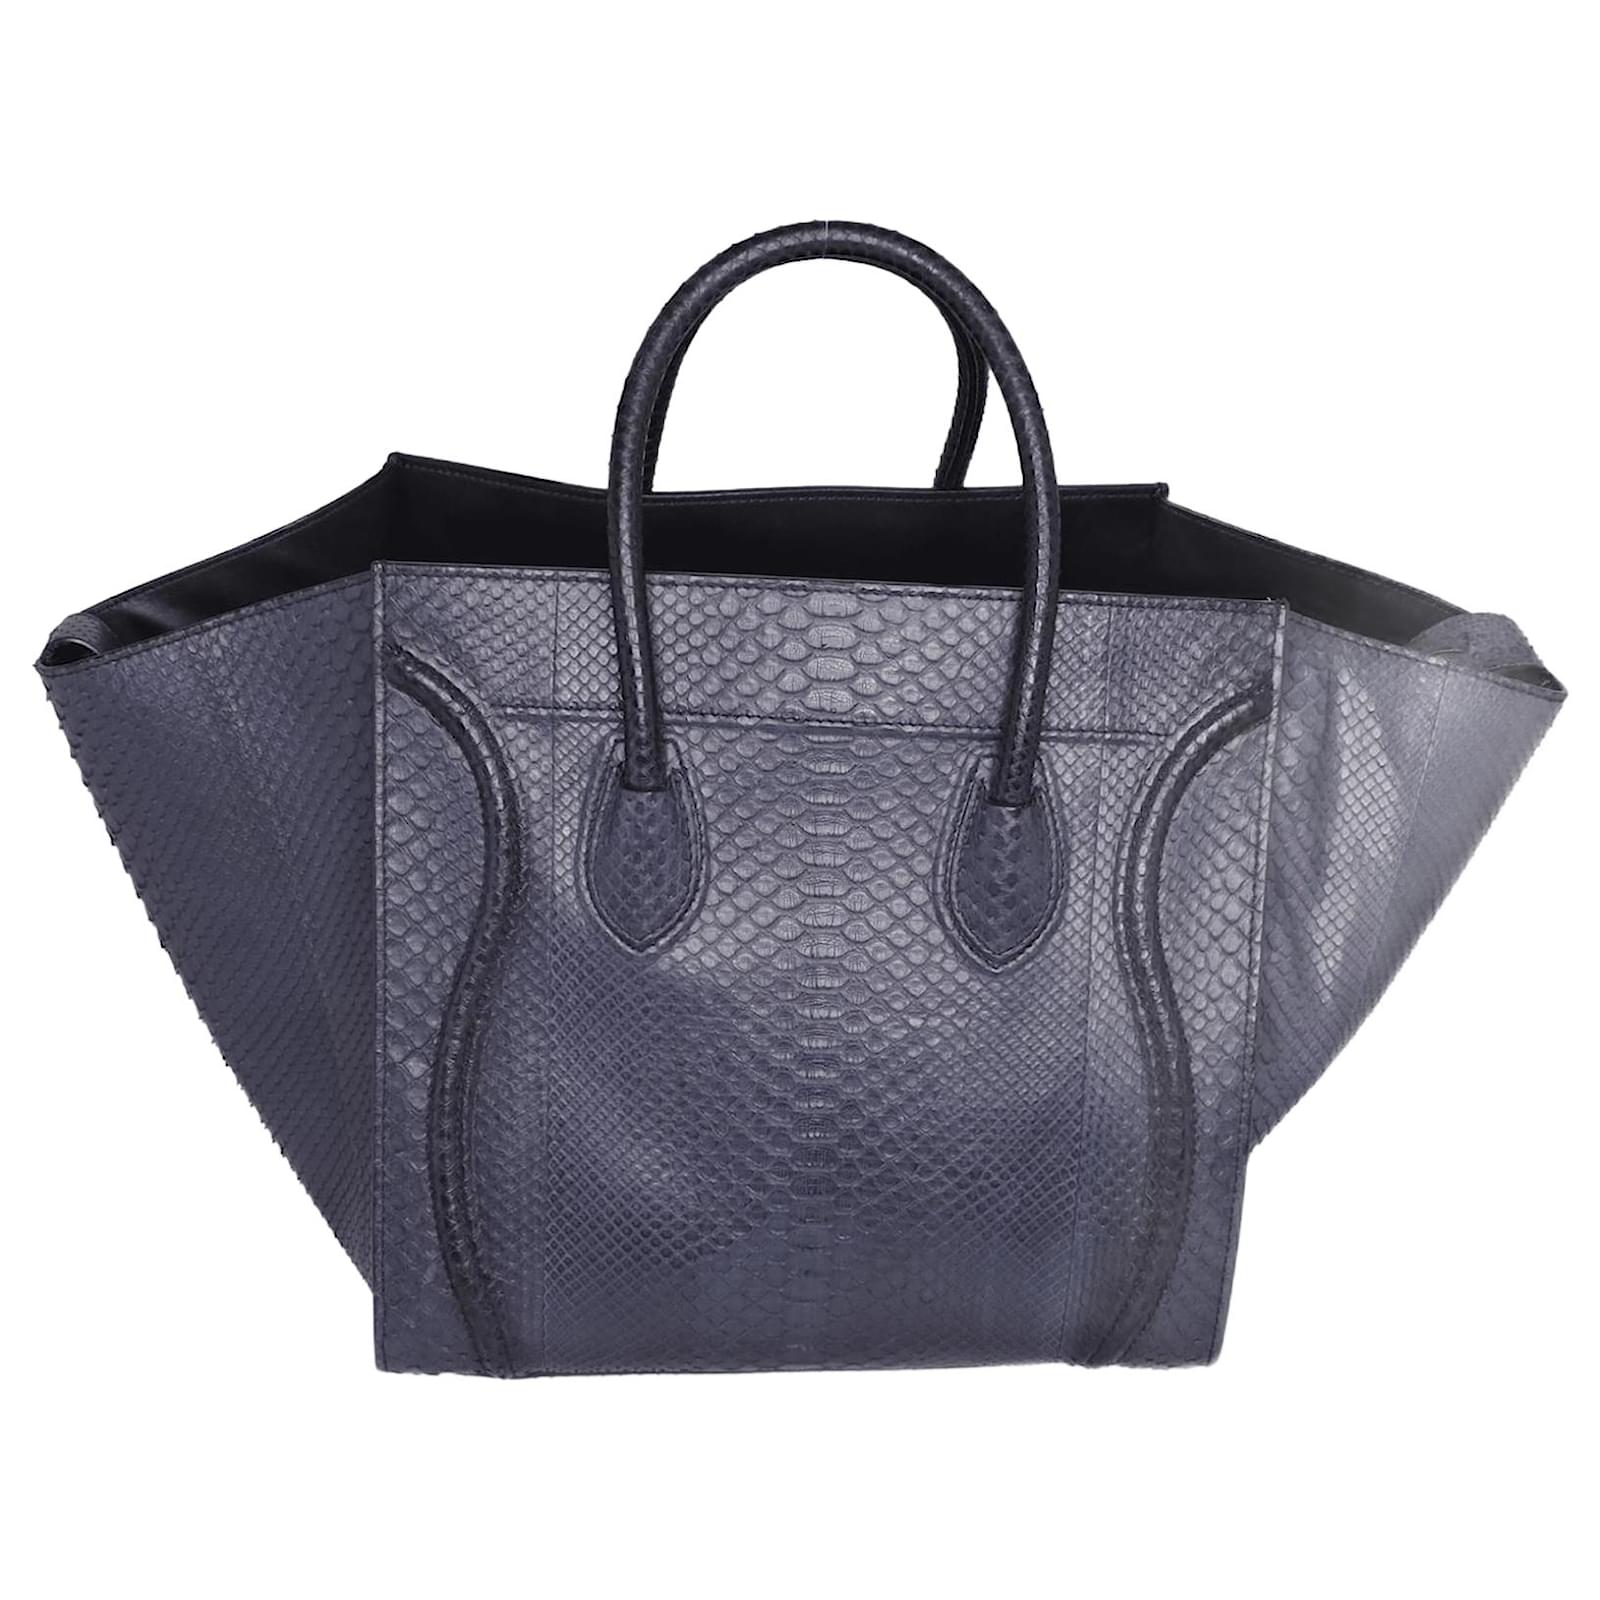 Celine Luggage Phantom Medium Leather Tote Bag Black